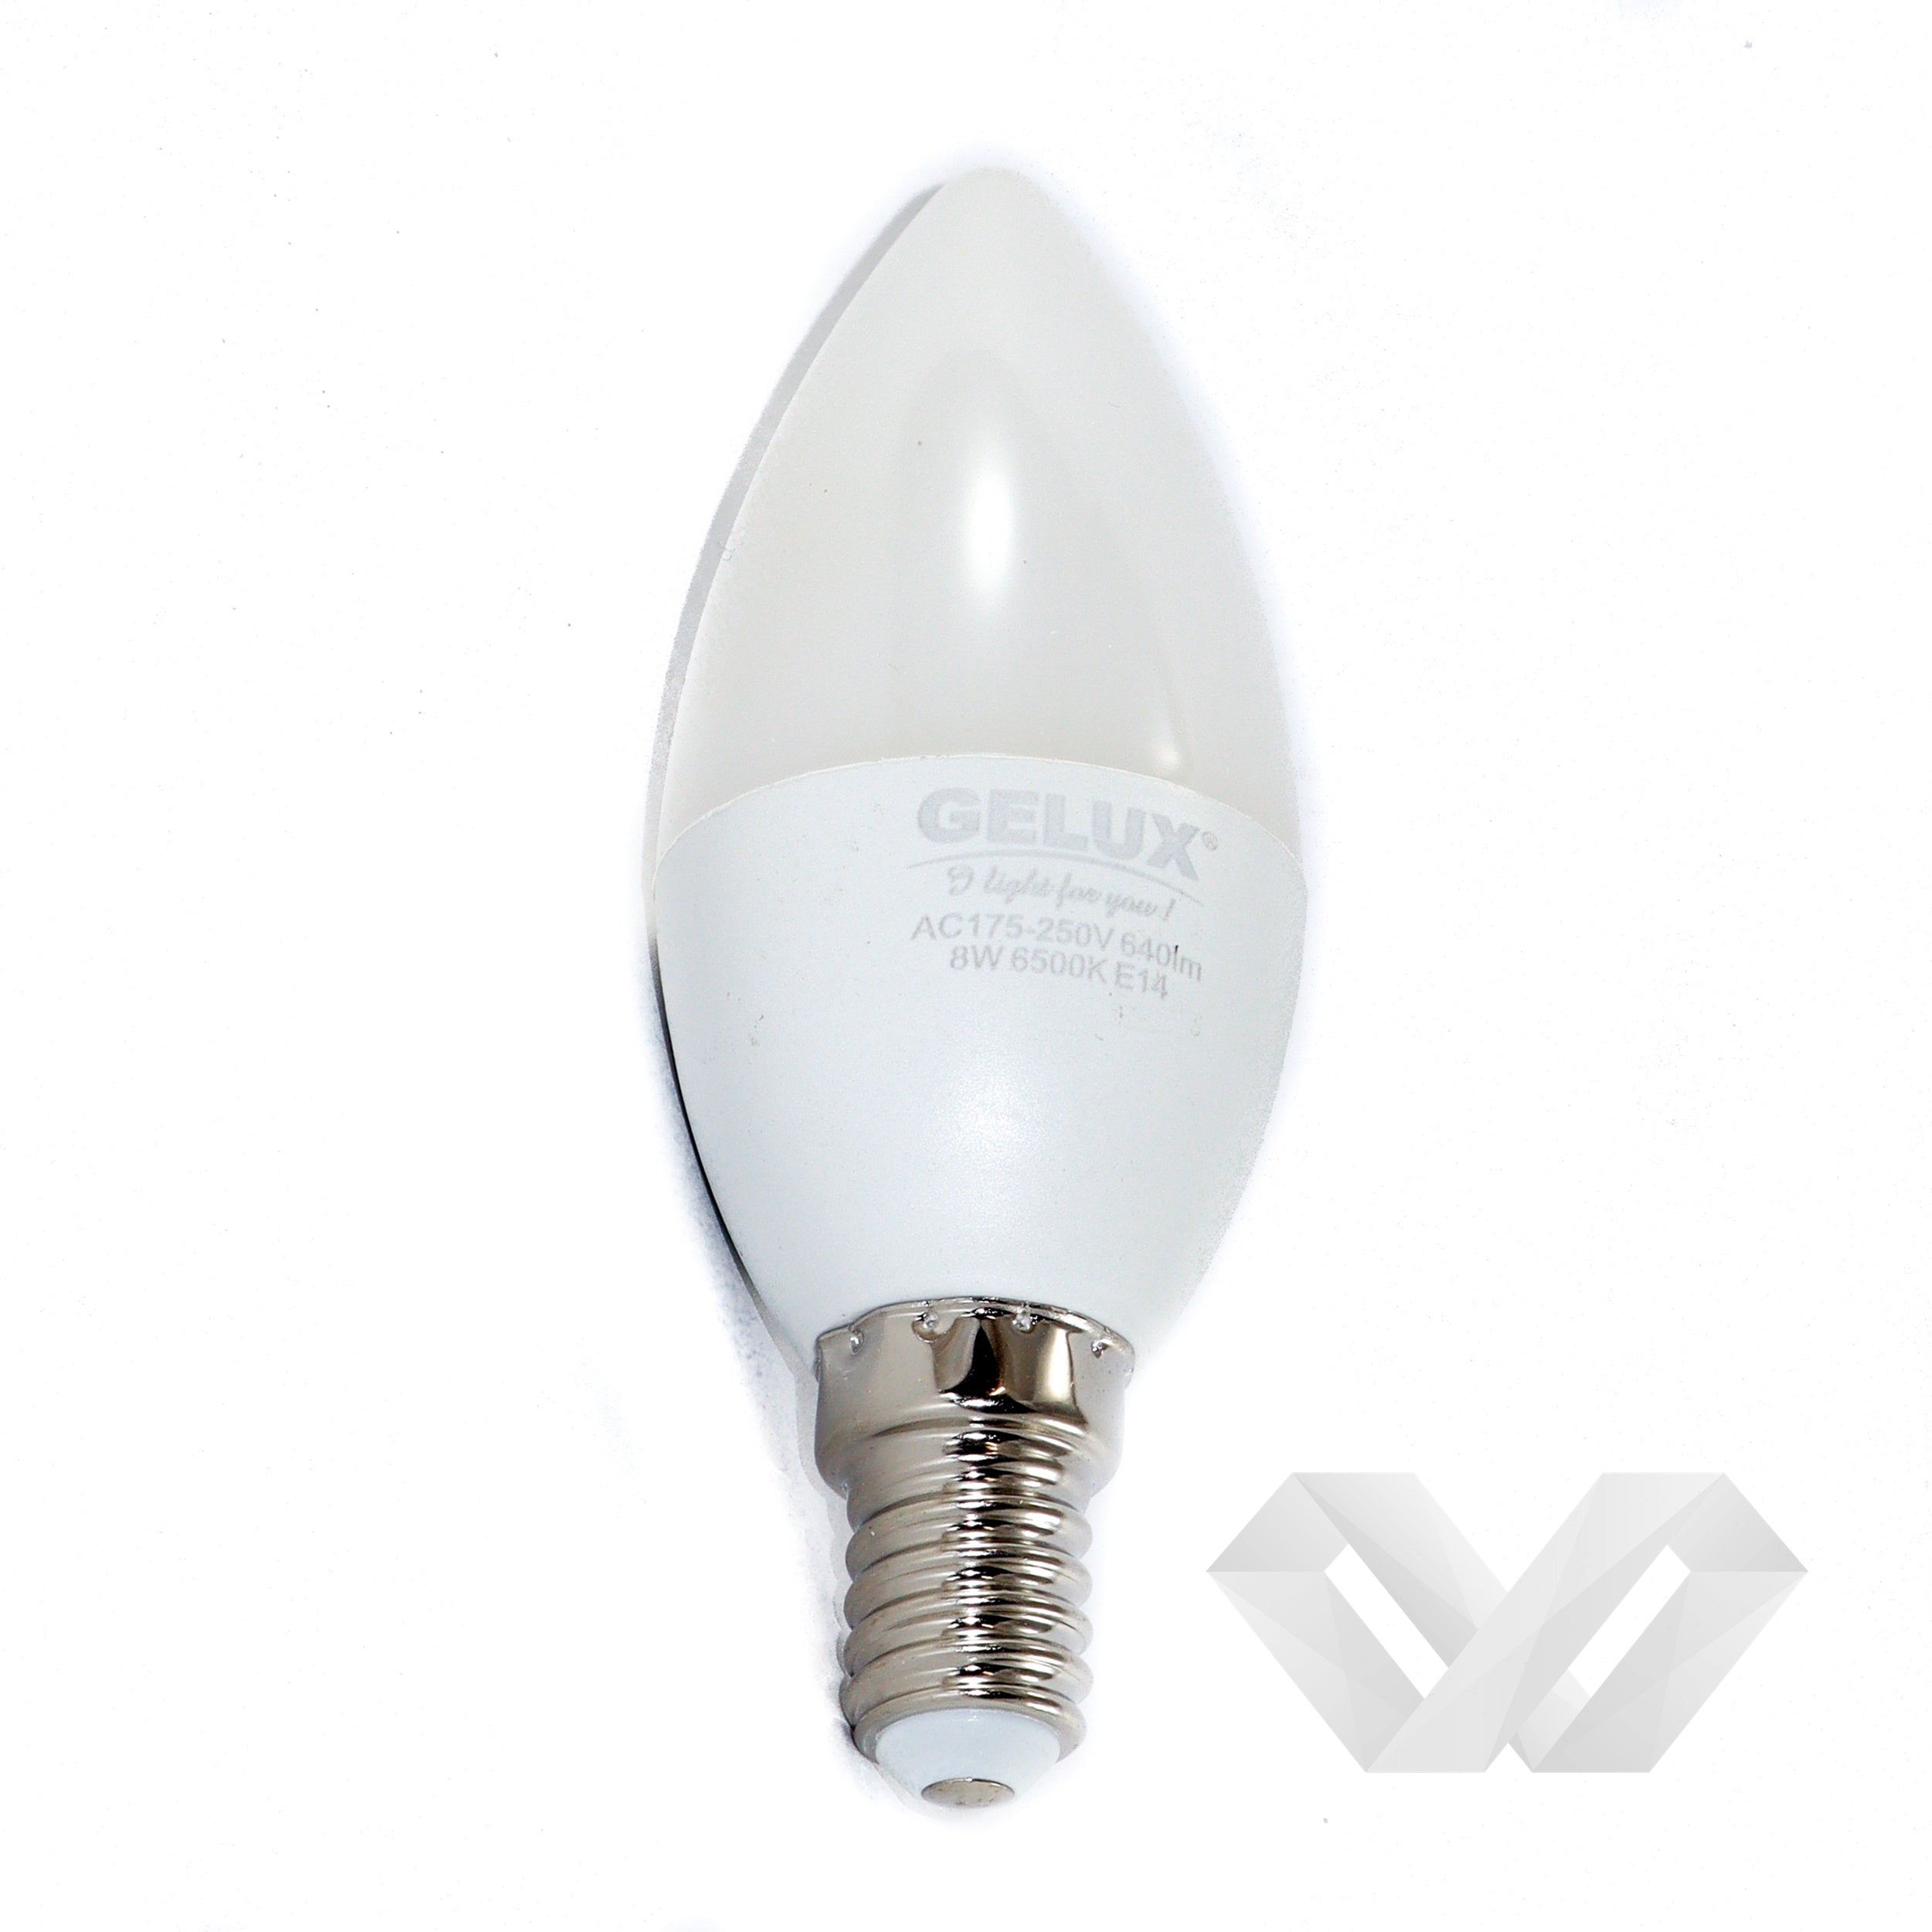 Bec LED Lumanare 8W E14 ECOLED, echivalent 64W lumina calda, Gelux